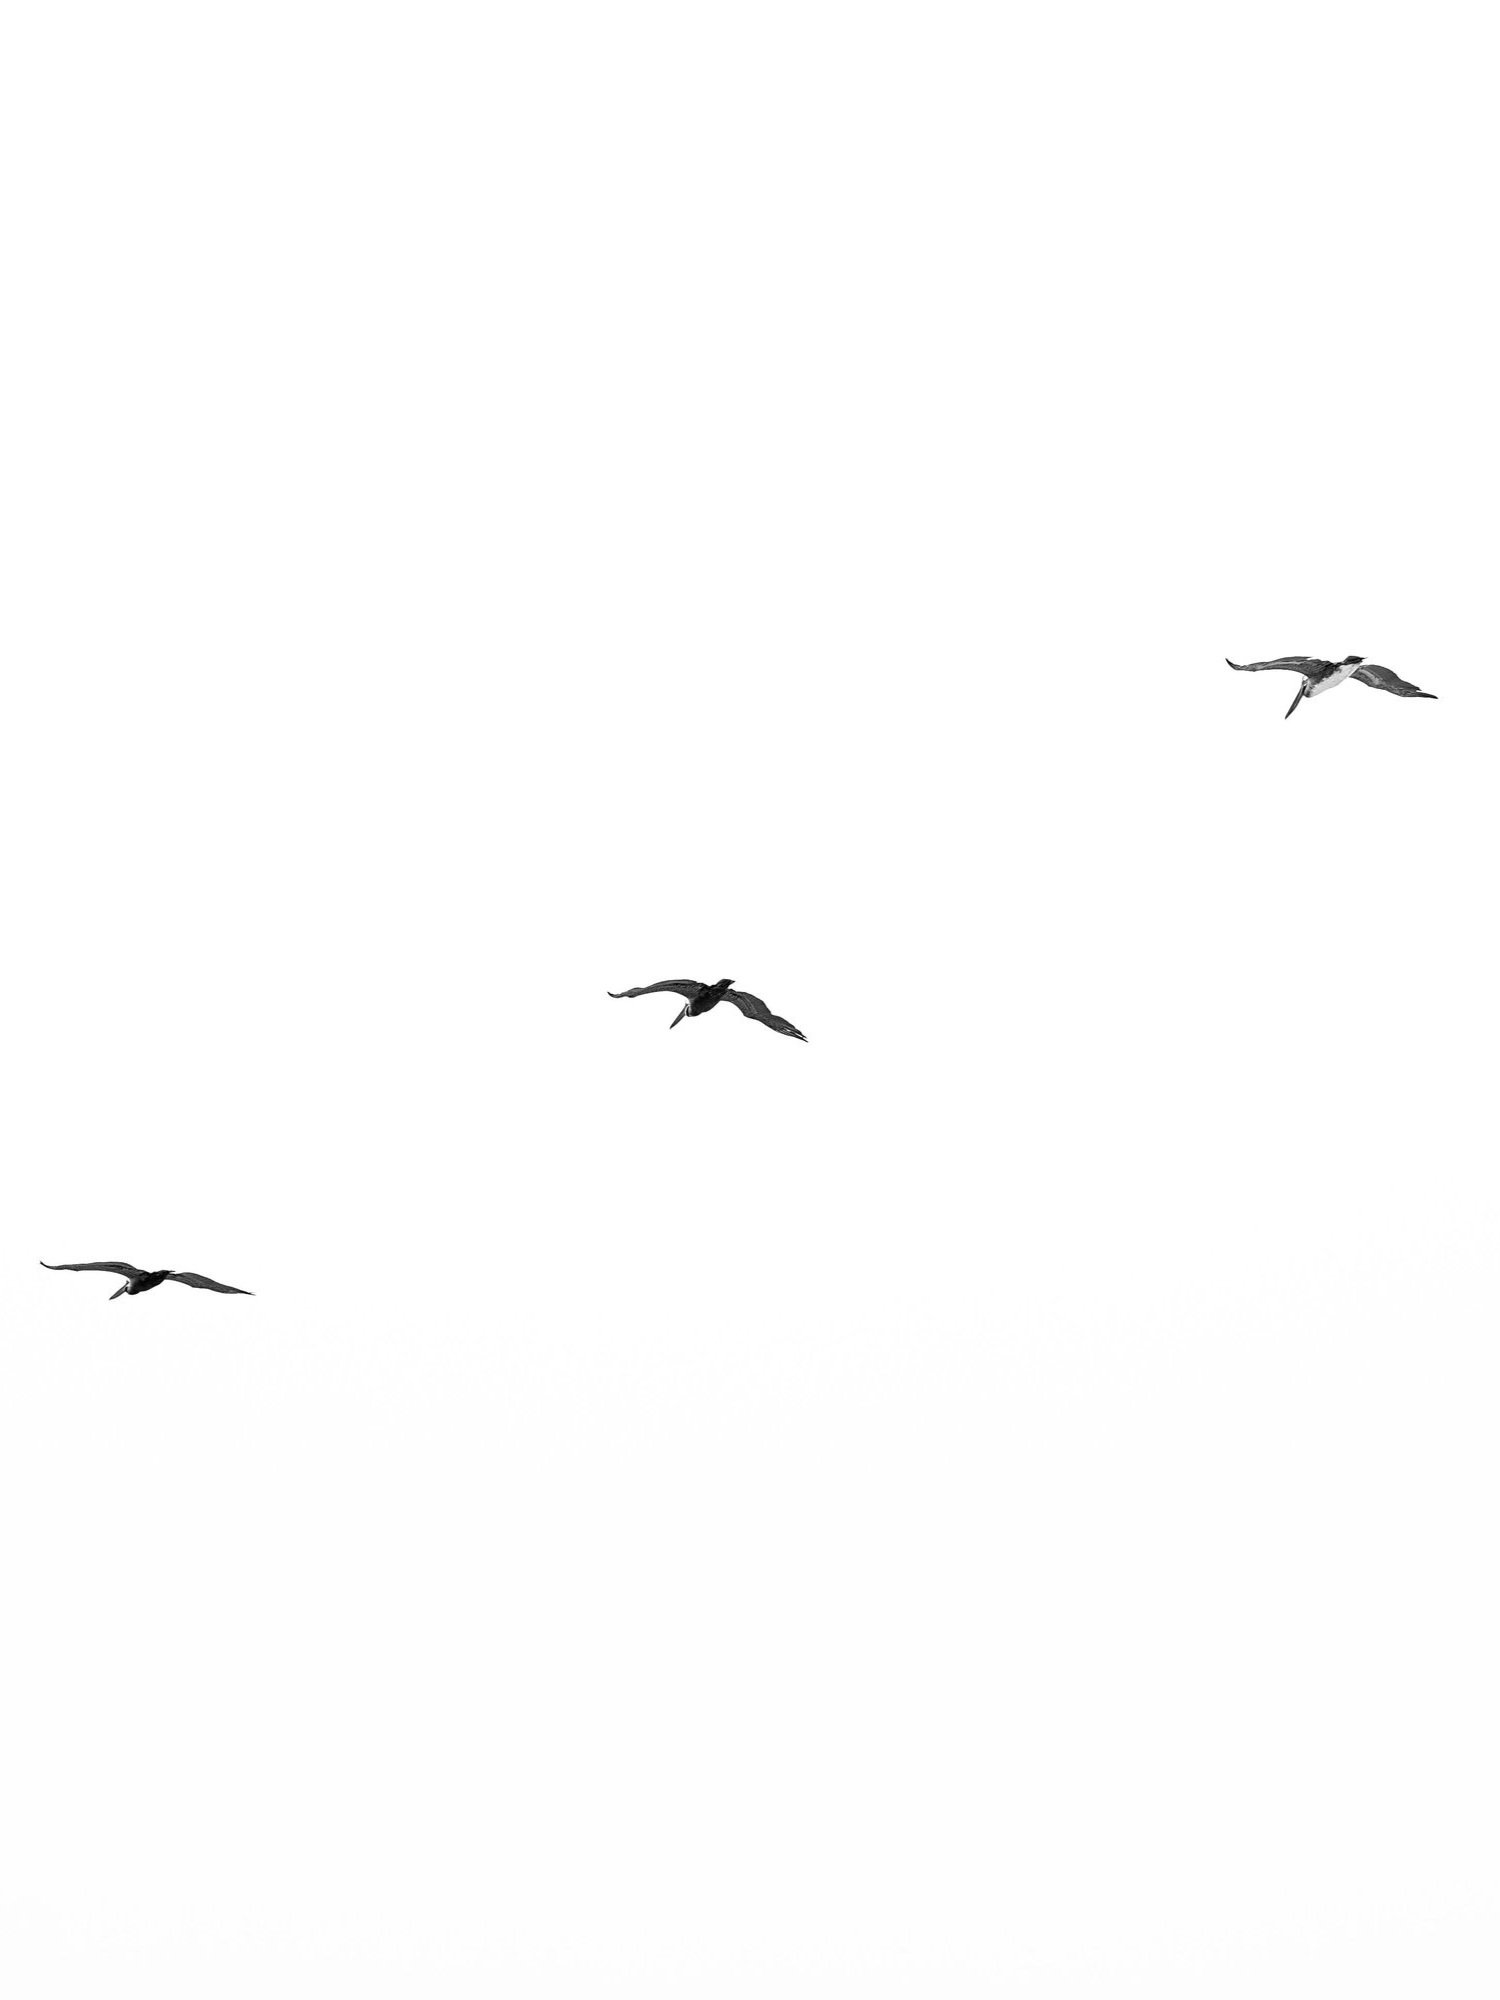 cali+birds.jpg